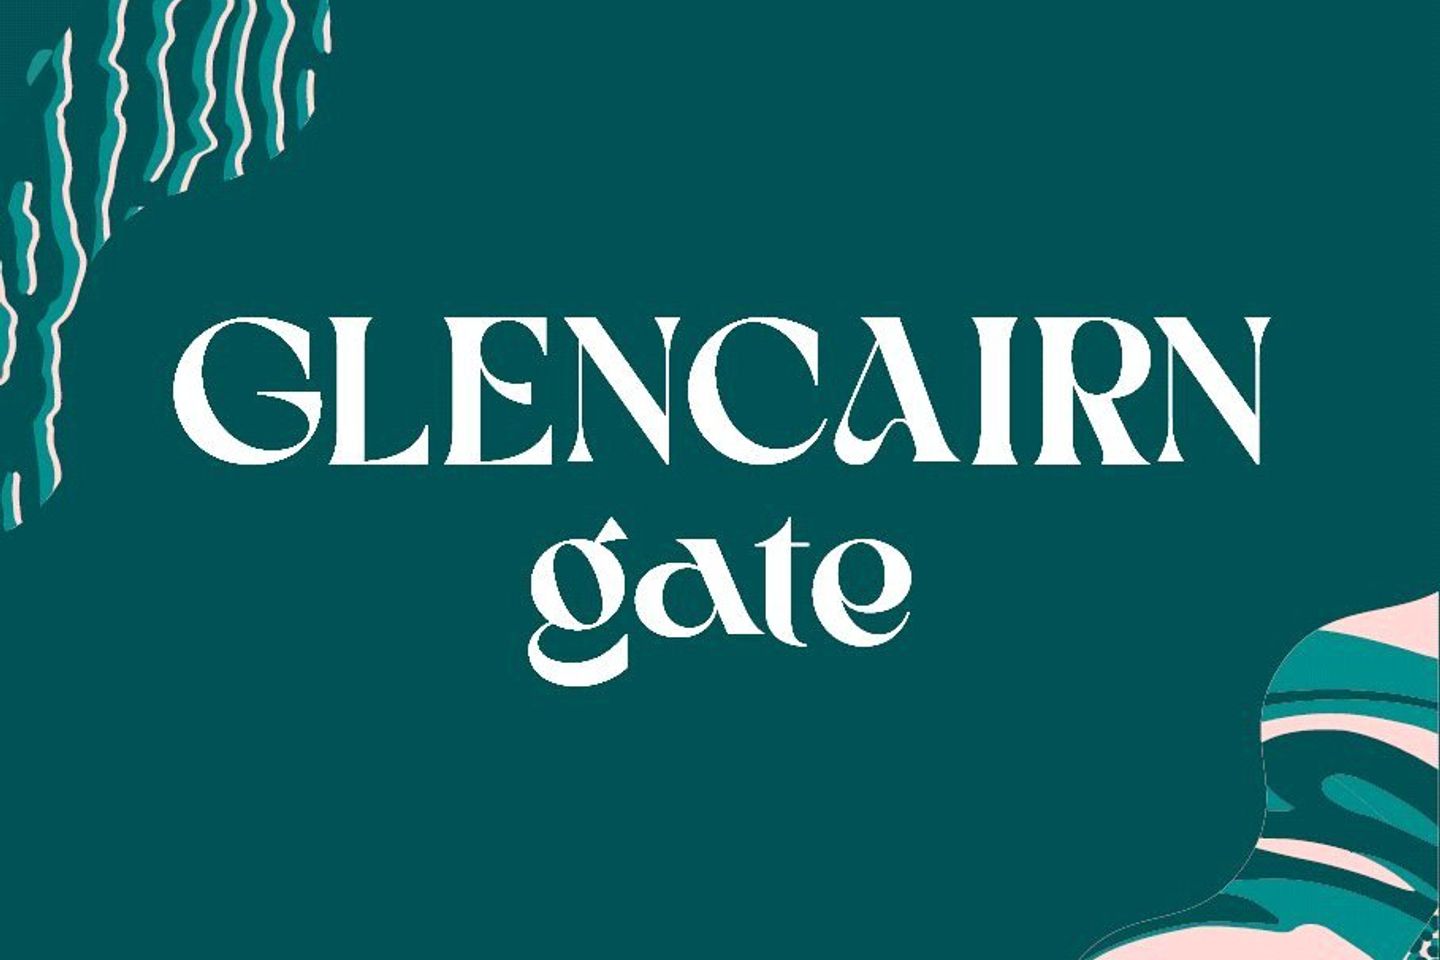 Pine Extended, Glencairn Gate, Pine Extended, Glencairn Gate, Leopardstown, Dublin 18